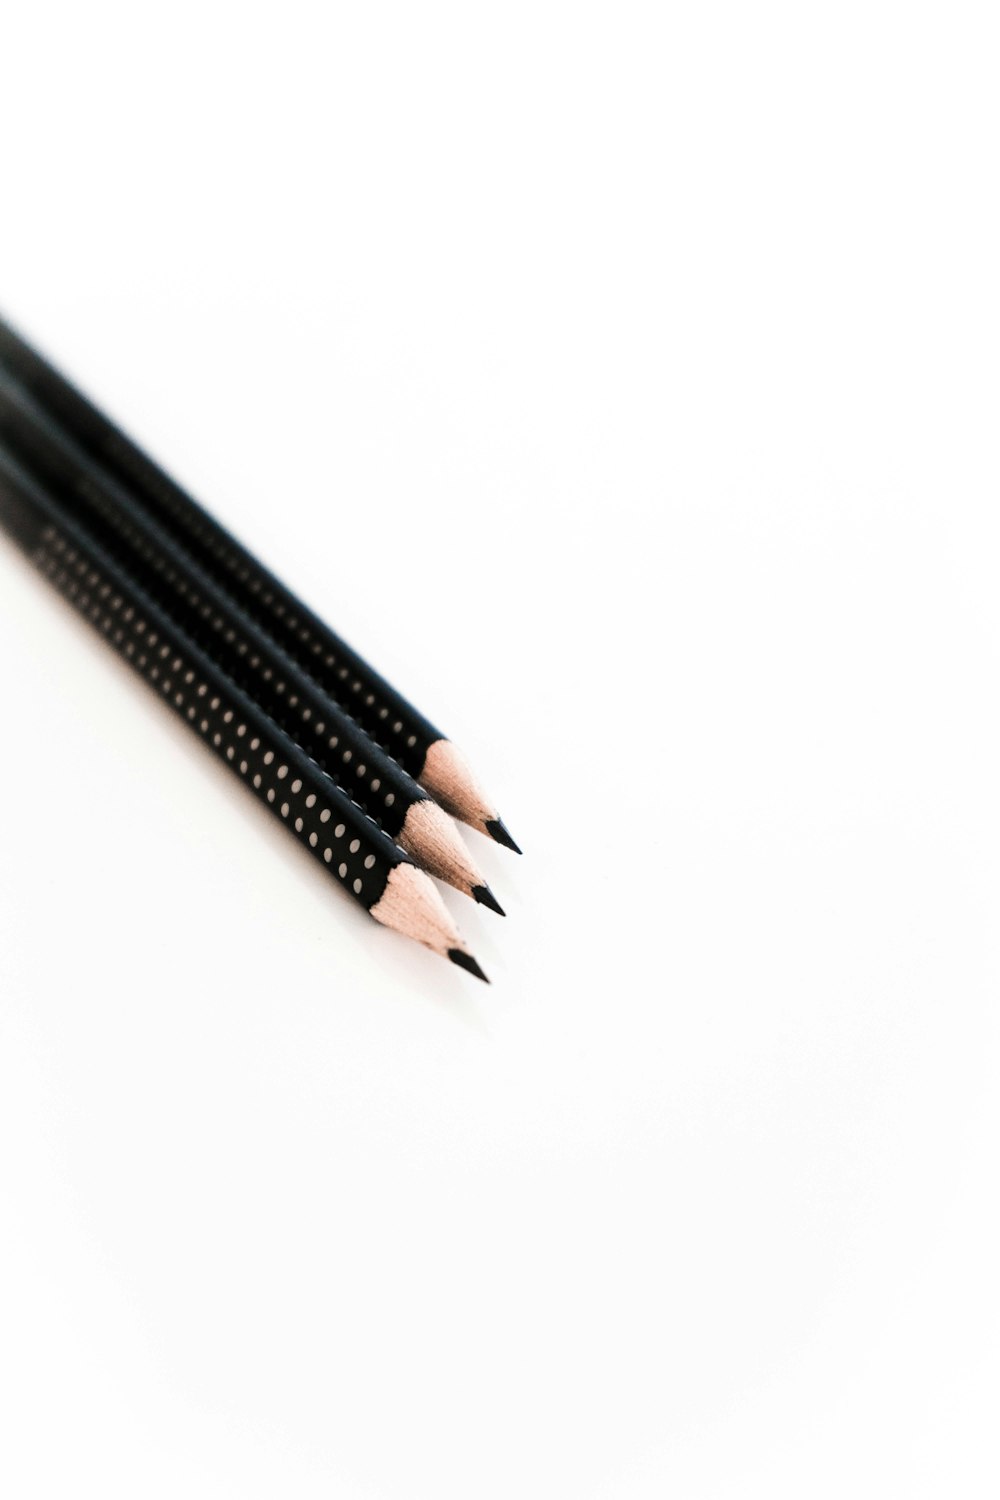 three led pencils on white background